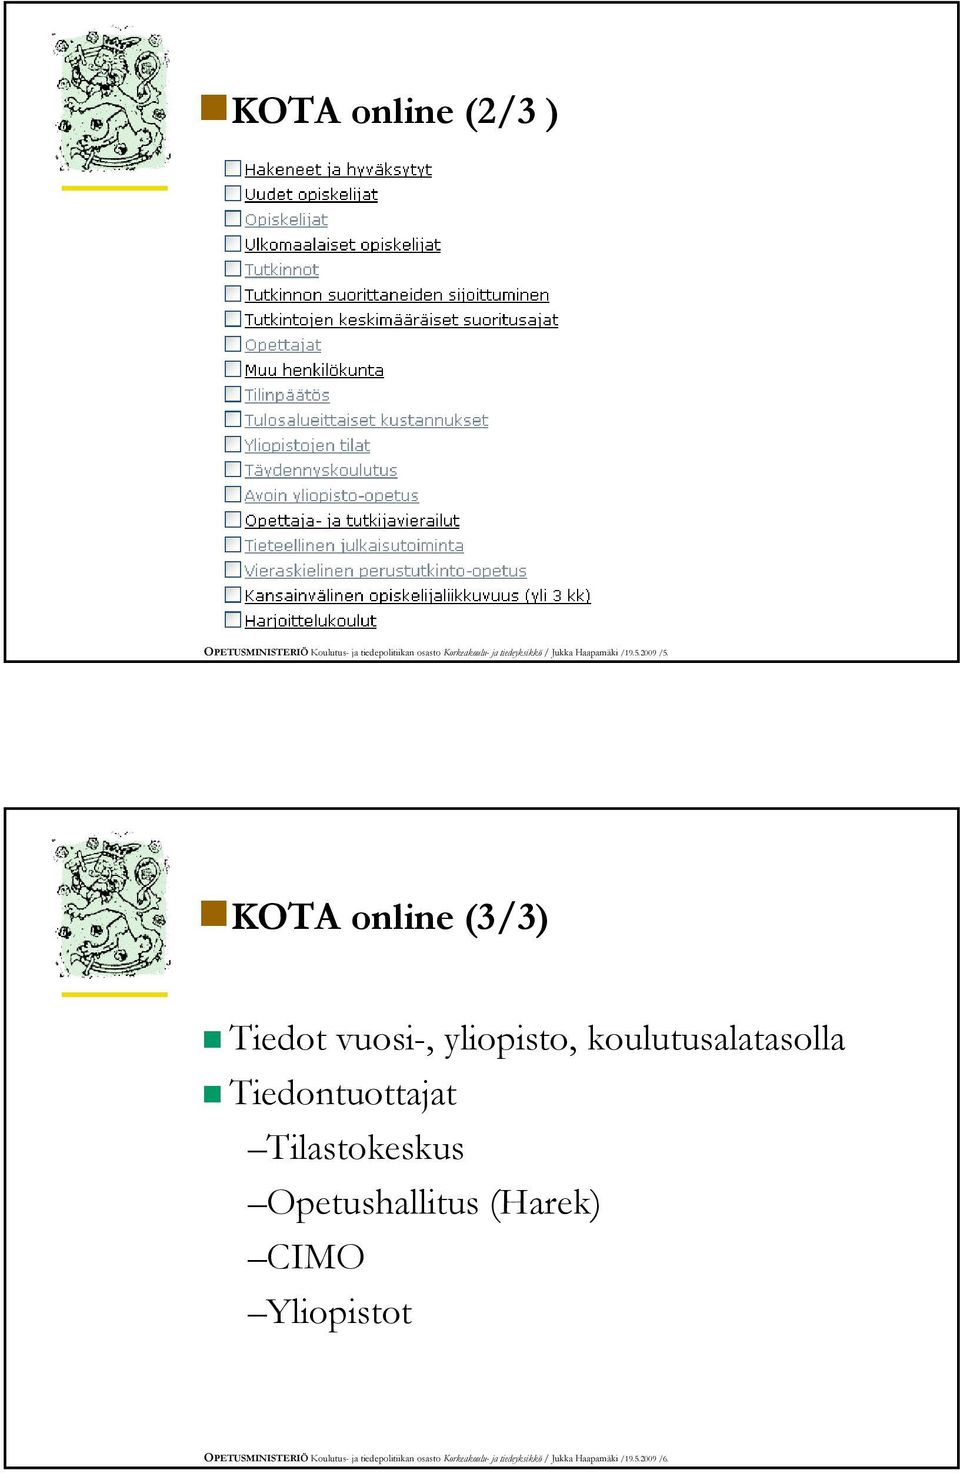 KOTA online (3/3) Tiedot vuosi-, yliopisto, koulutusalatasolla Tiedontuottajat Tilastokeskus